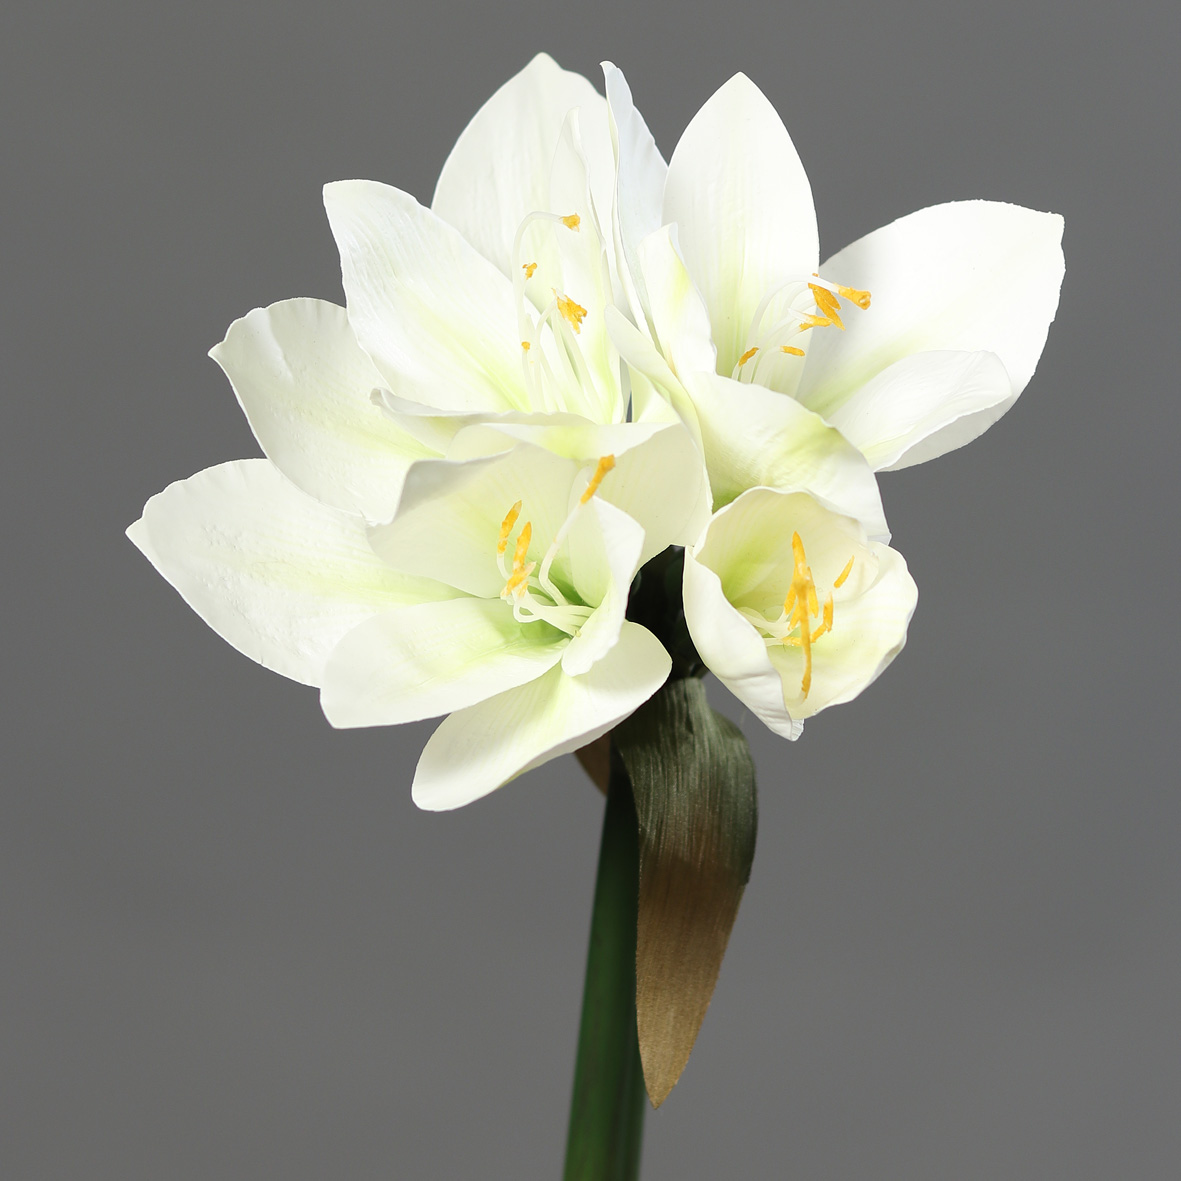 Amaryllis Real Touch 36cm weiß DP Kunstblumen künstliche Blumen Pflanzen